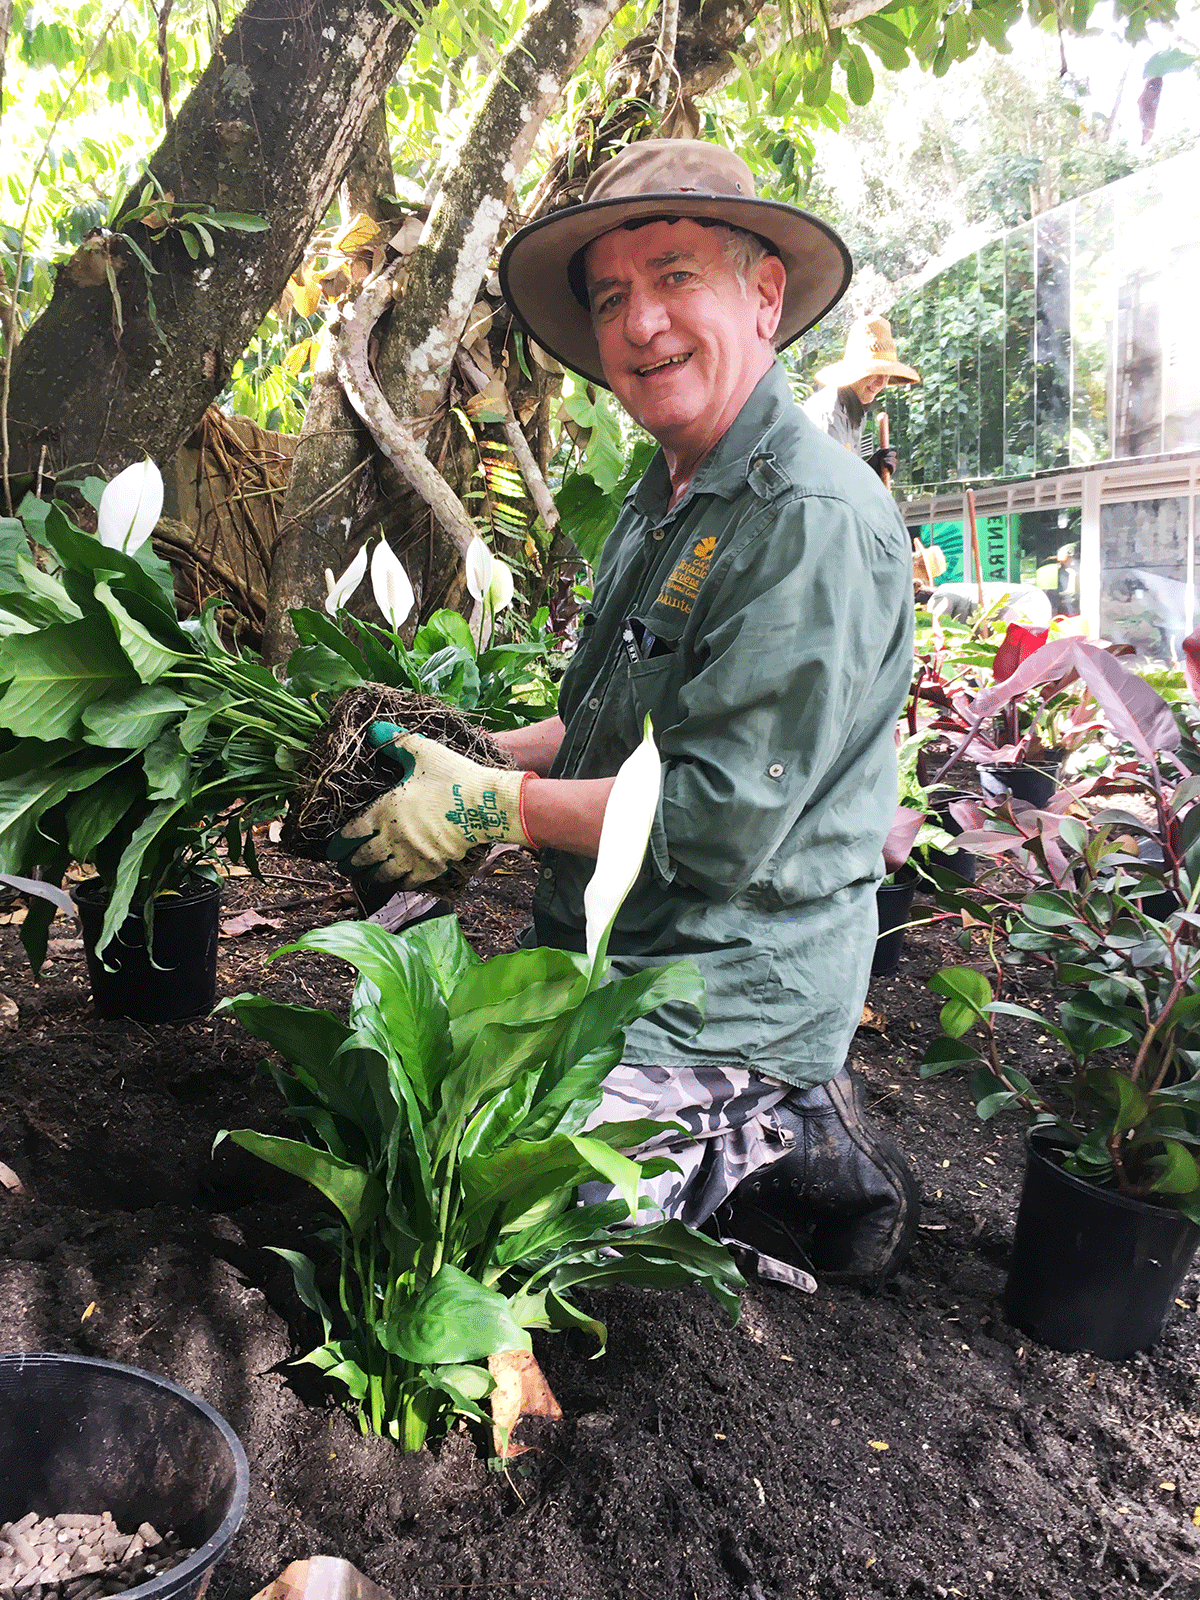 Volunteer kneeling in a garden adding new lilies